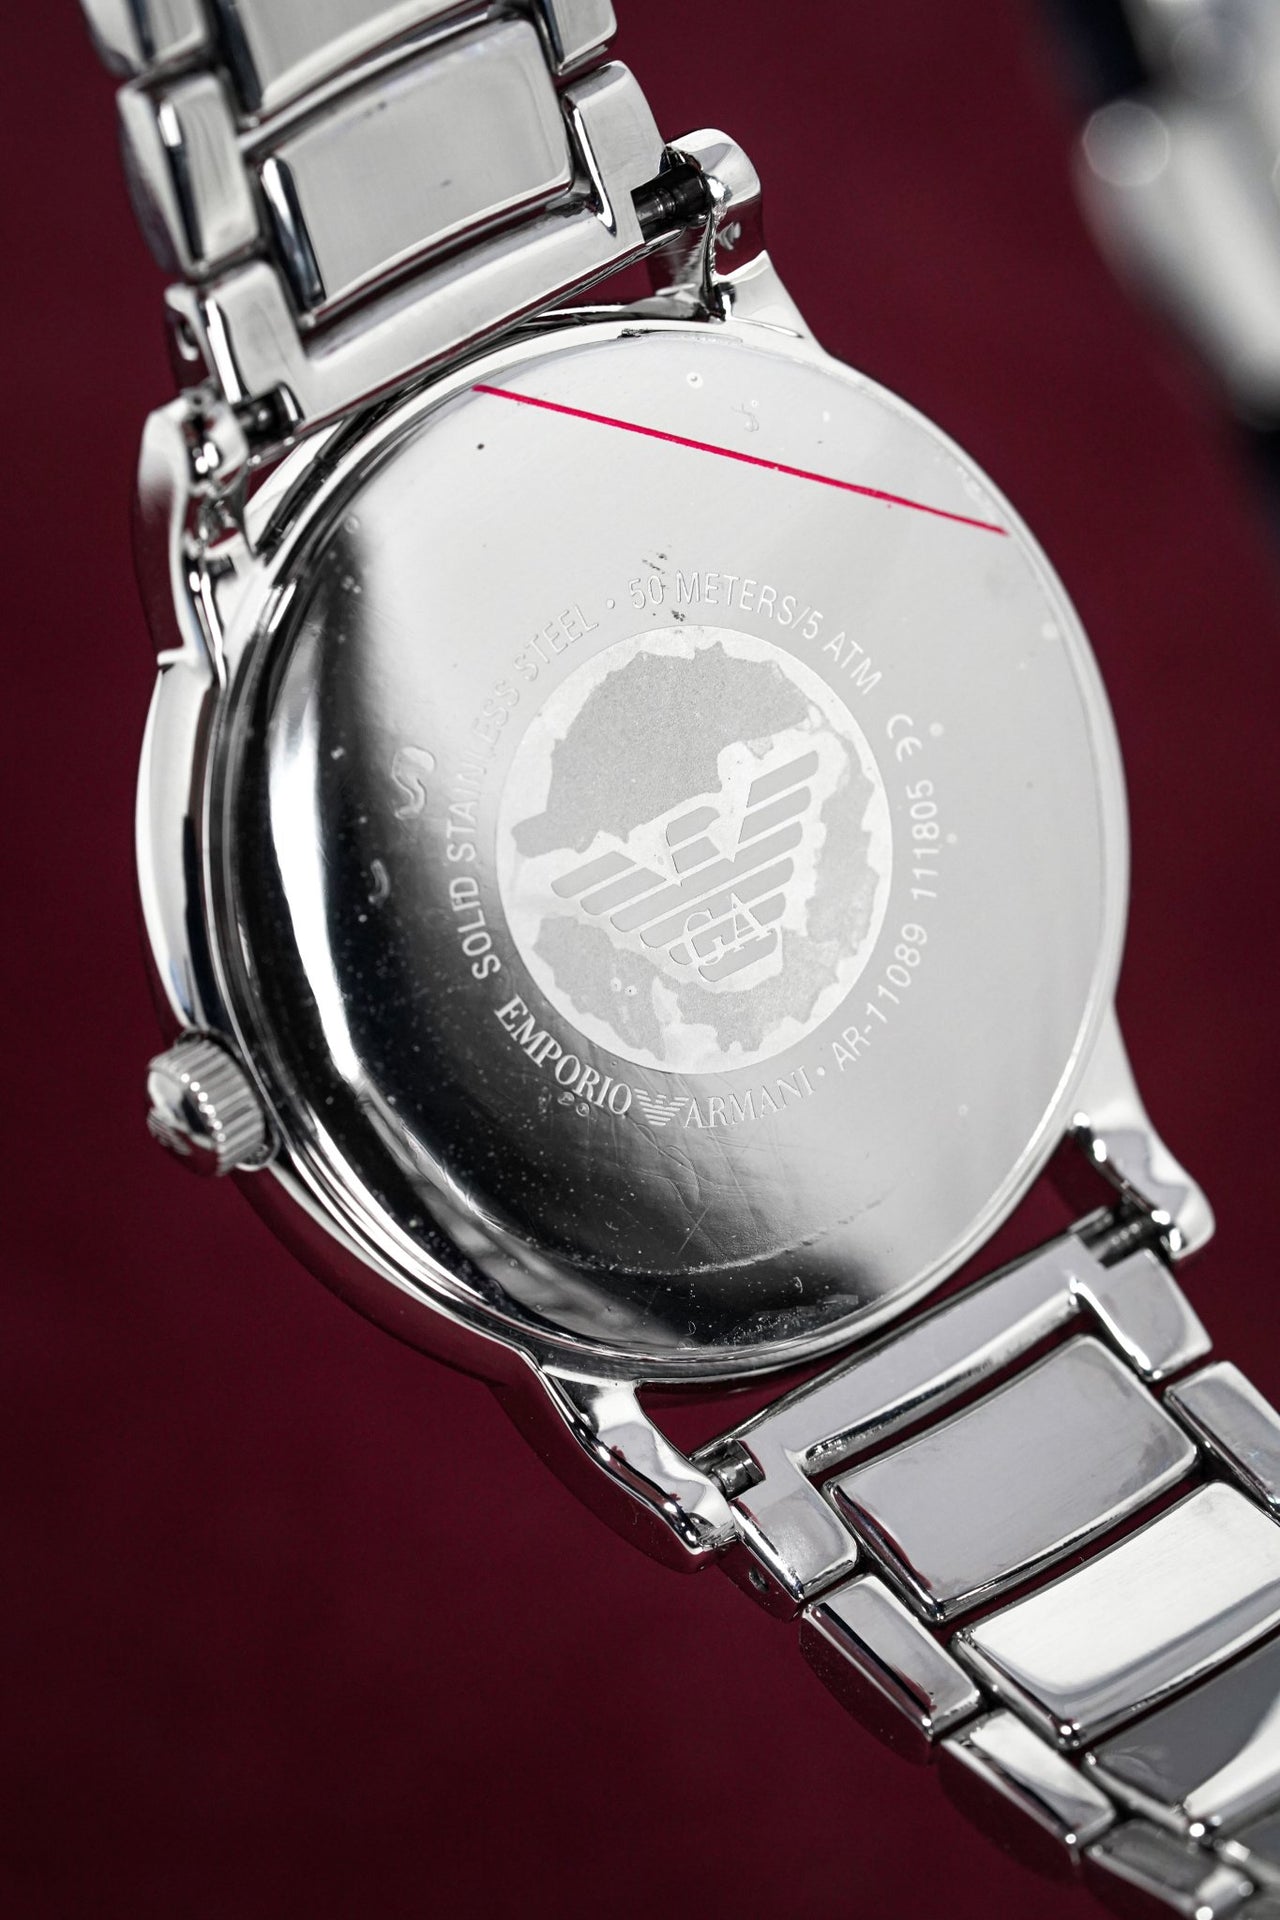 Emporio Armani Men's Luigi Watch Steel Blue AR11089 - Watches & Crystals